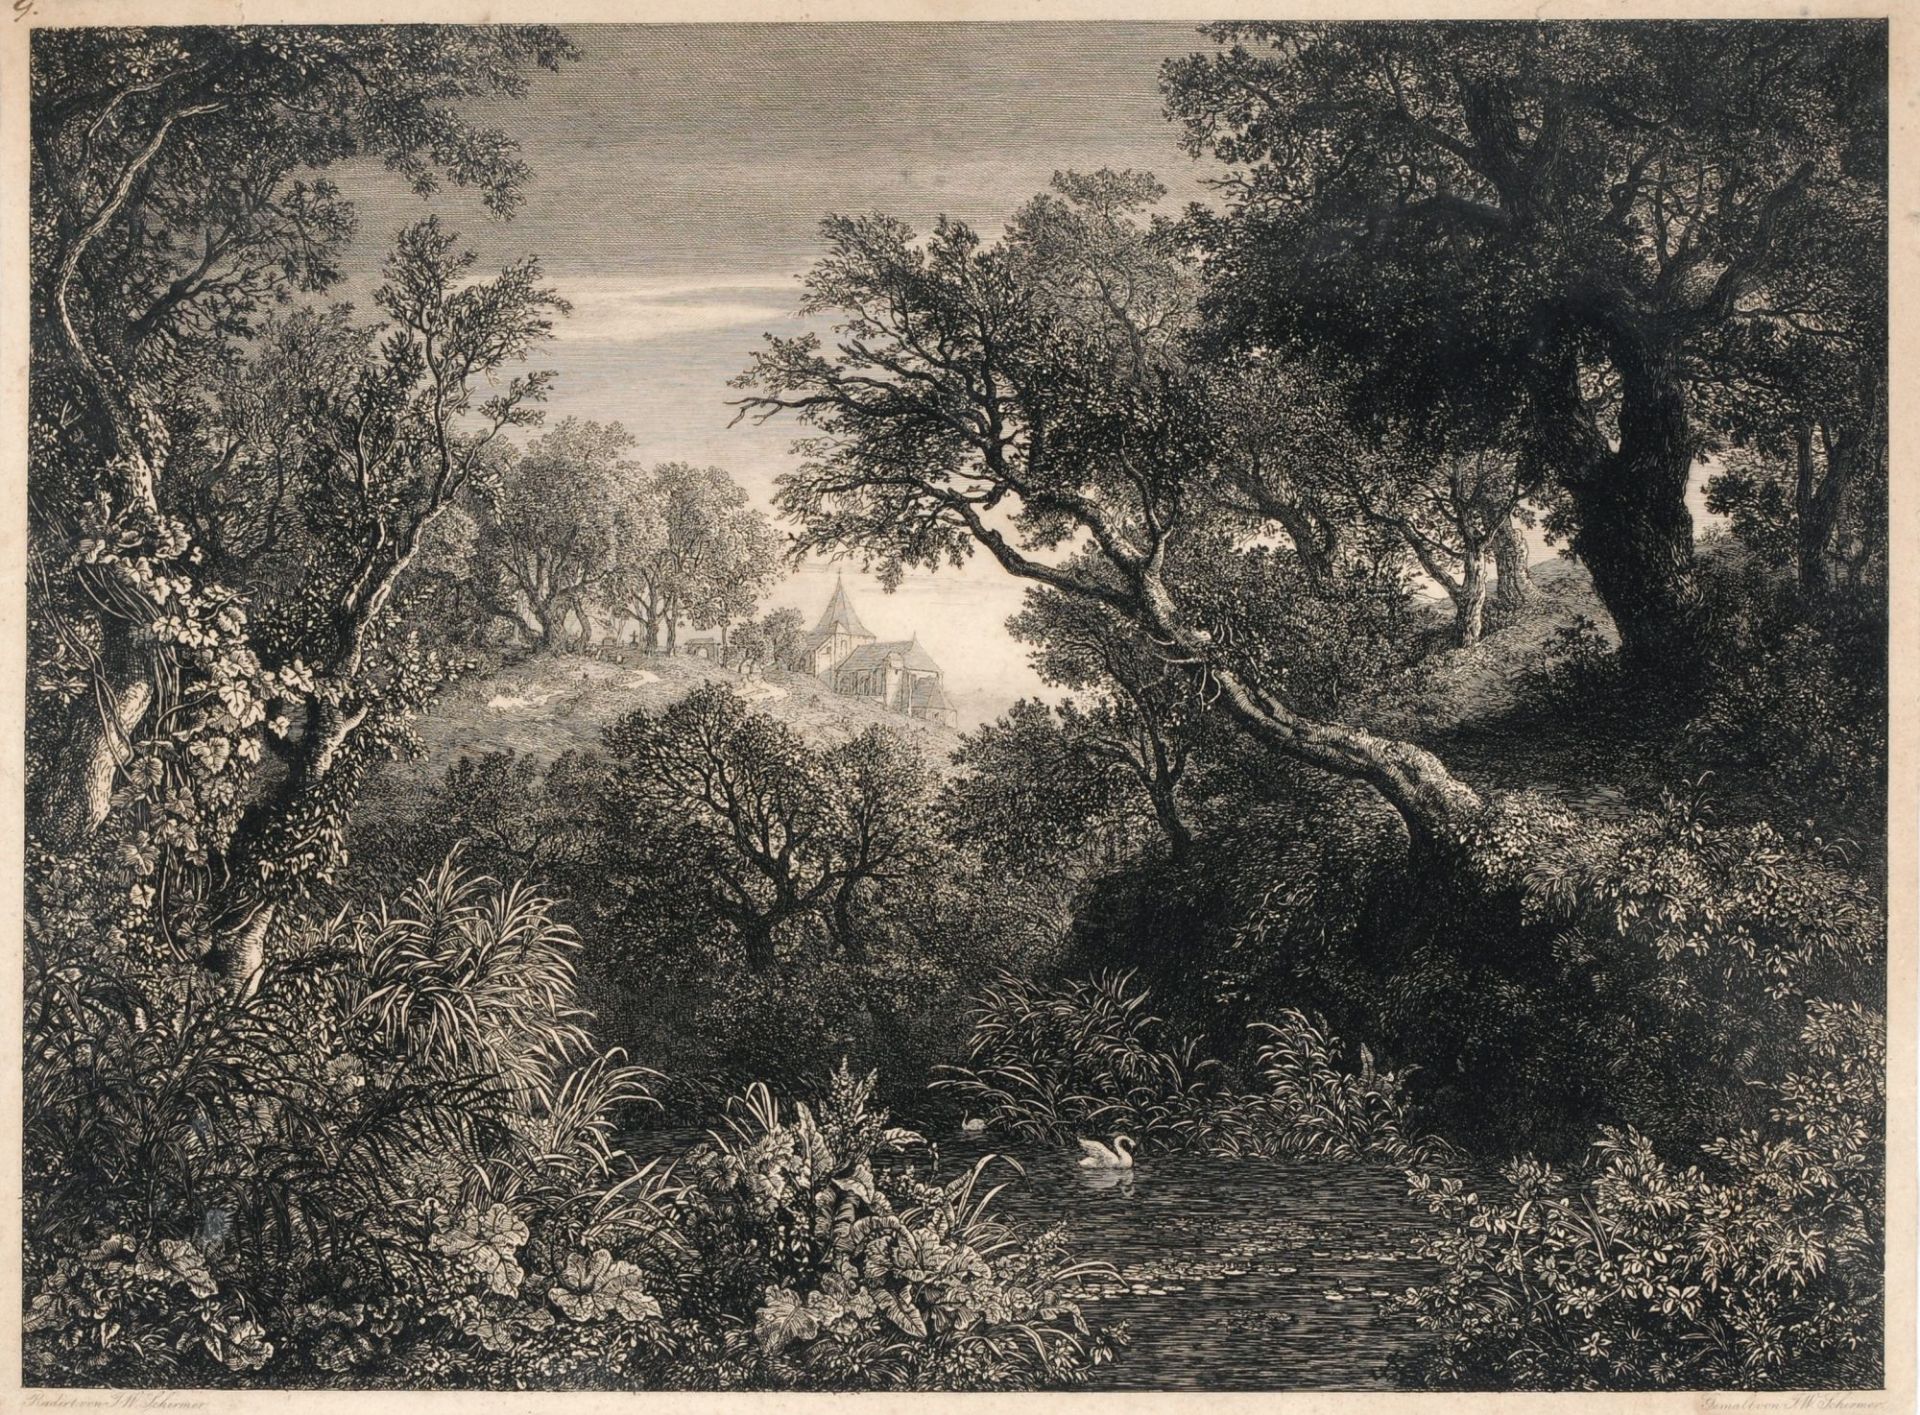 Johann Wilhelm Schirmer "Die große deutsche Landschaft". 1841.